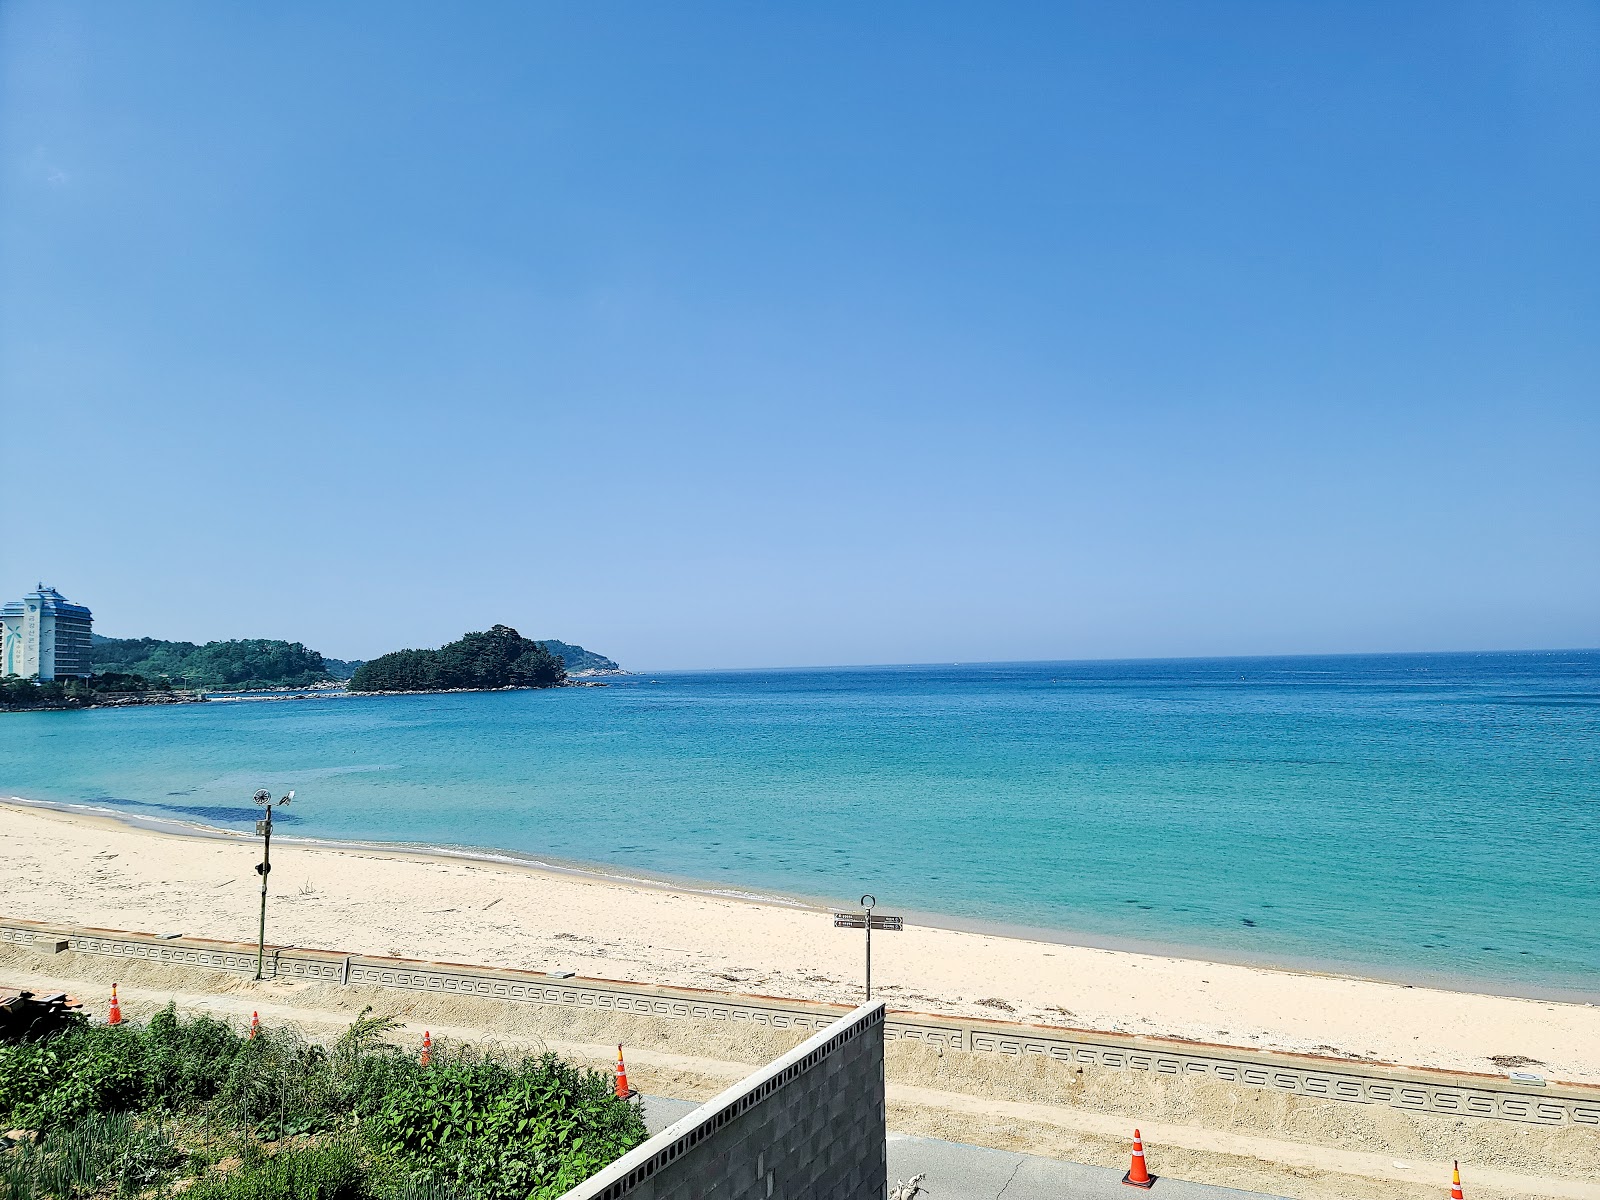 Foto af Daejin 1 Lee Beach - populært sted blandt afslapningskendere